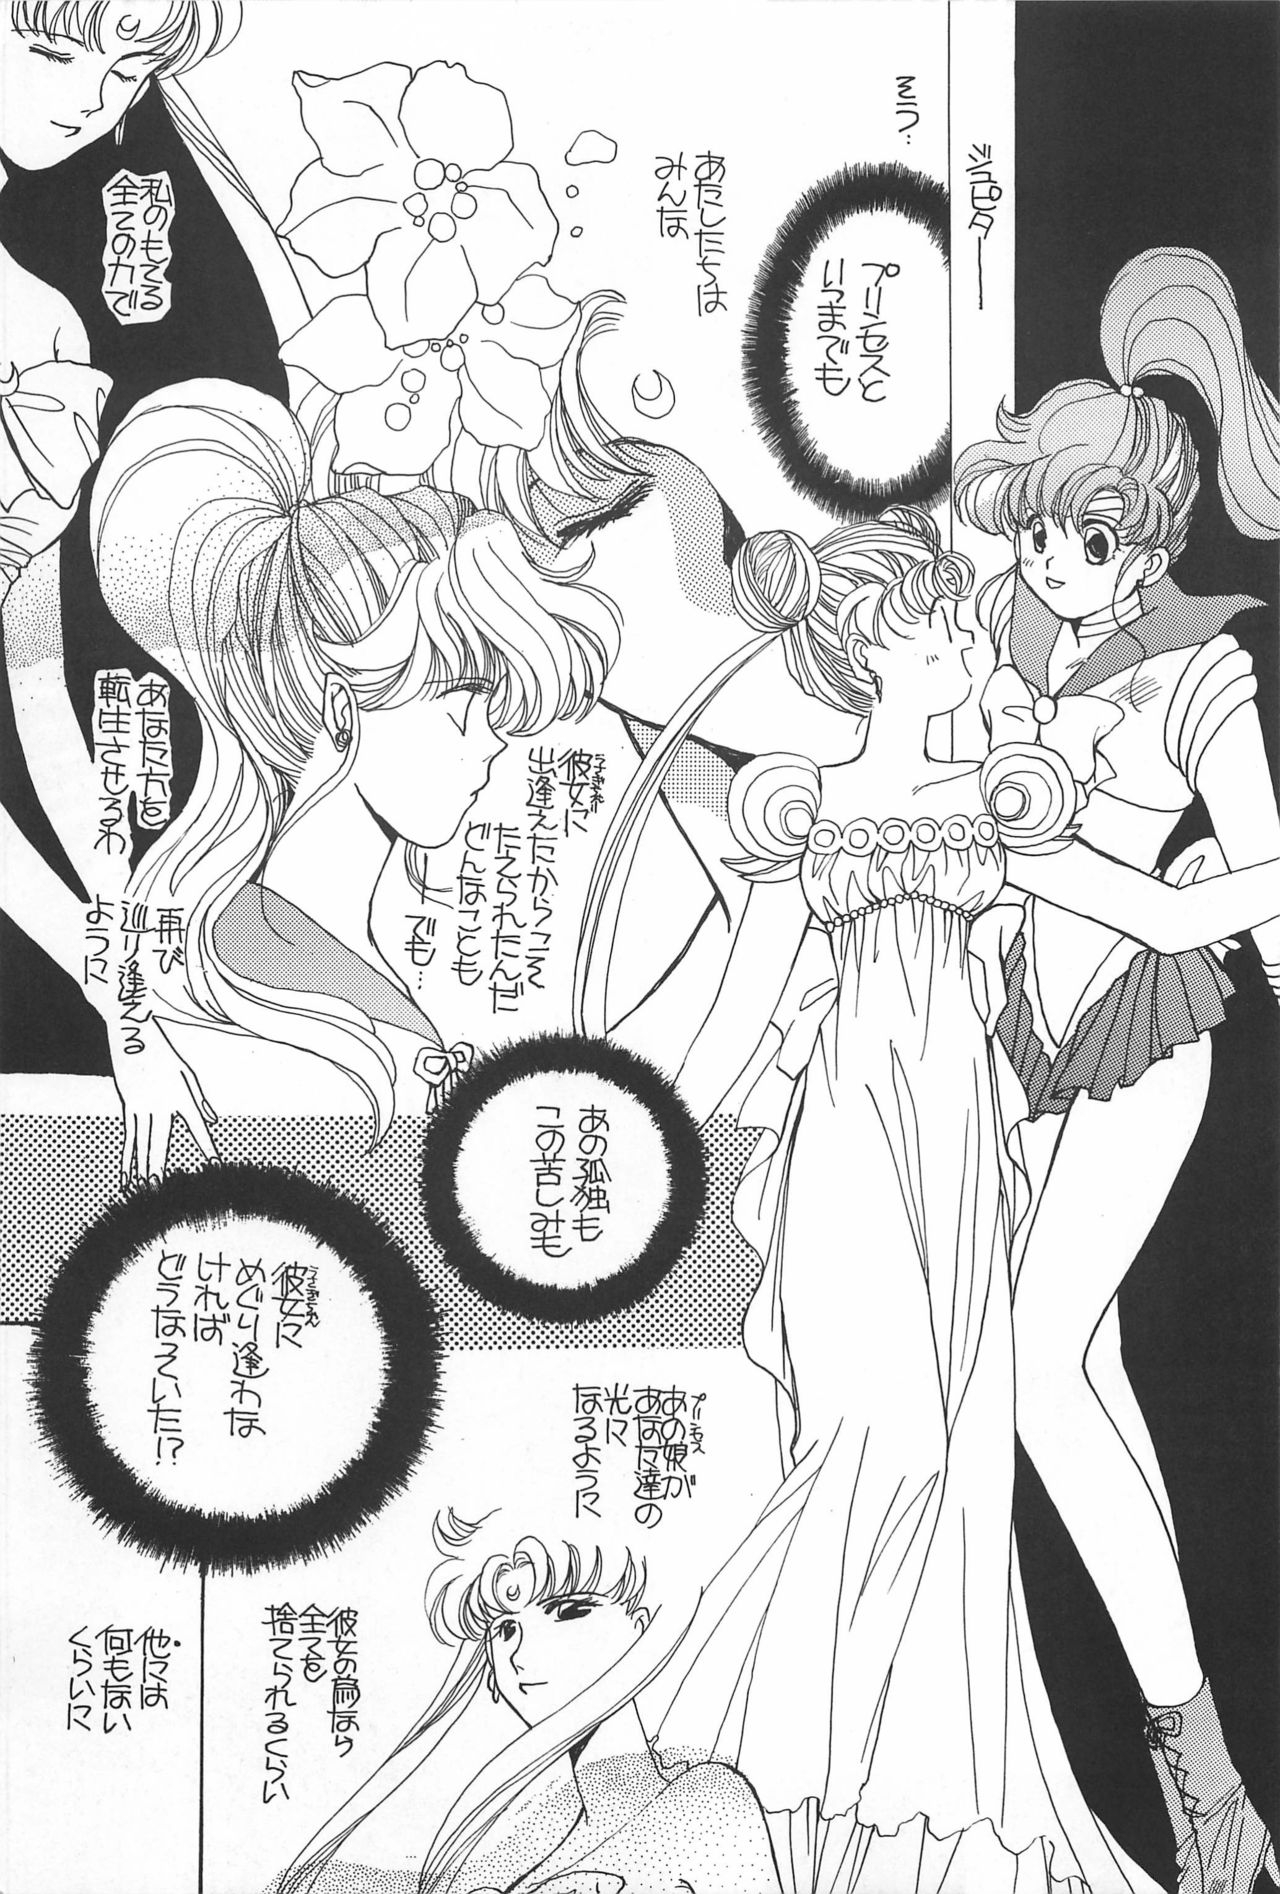 [Hello World (Muttri Moony)] Kaze no You ni Yume no You ni - Sailor Moon Collection (Sailor Moon) 190